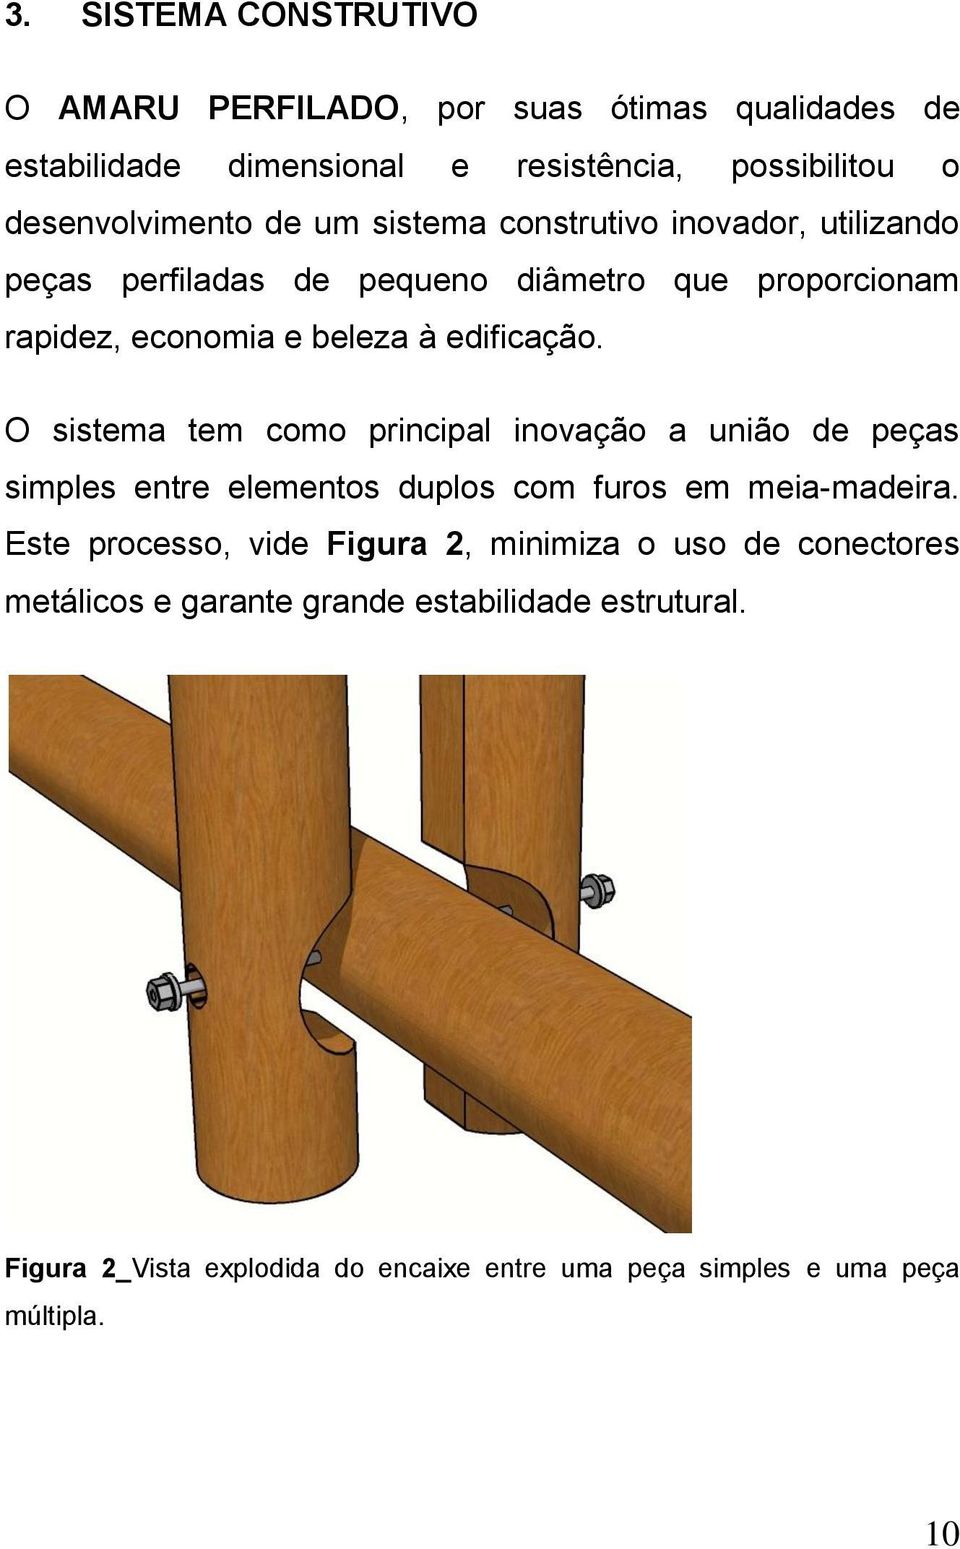 O sistema tem como principal inovação a união de peças simples entre elementos duplos com furos em meia-madeira.